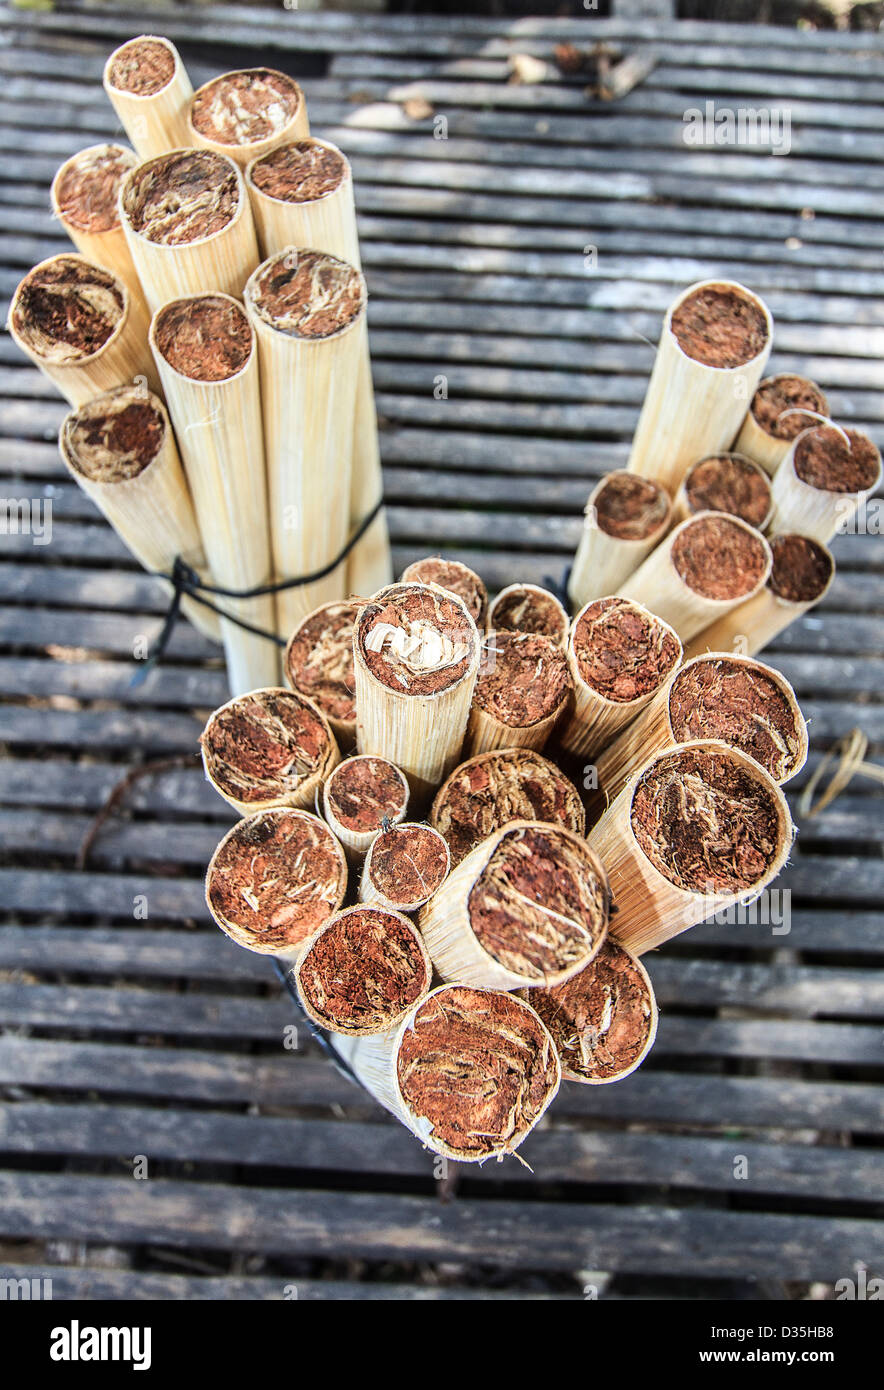 Doux, riz gluant est combiné avec les haricots rouges et scellés dans des tubes de bambou qui sont recouvertes d'écorces de noix de coco au Cambodge Banque D'Images